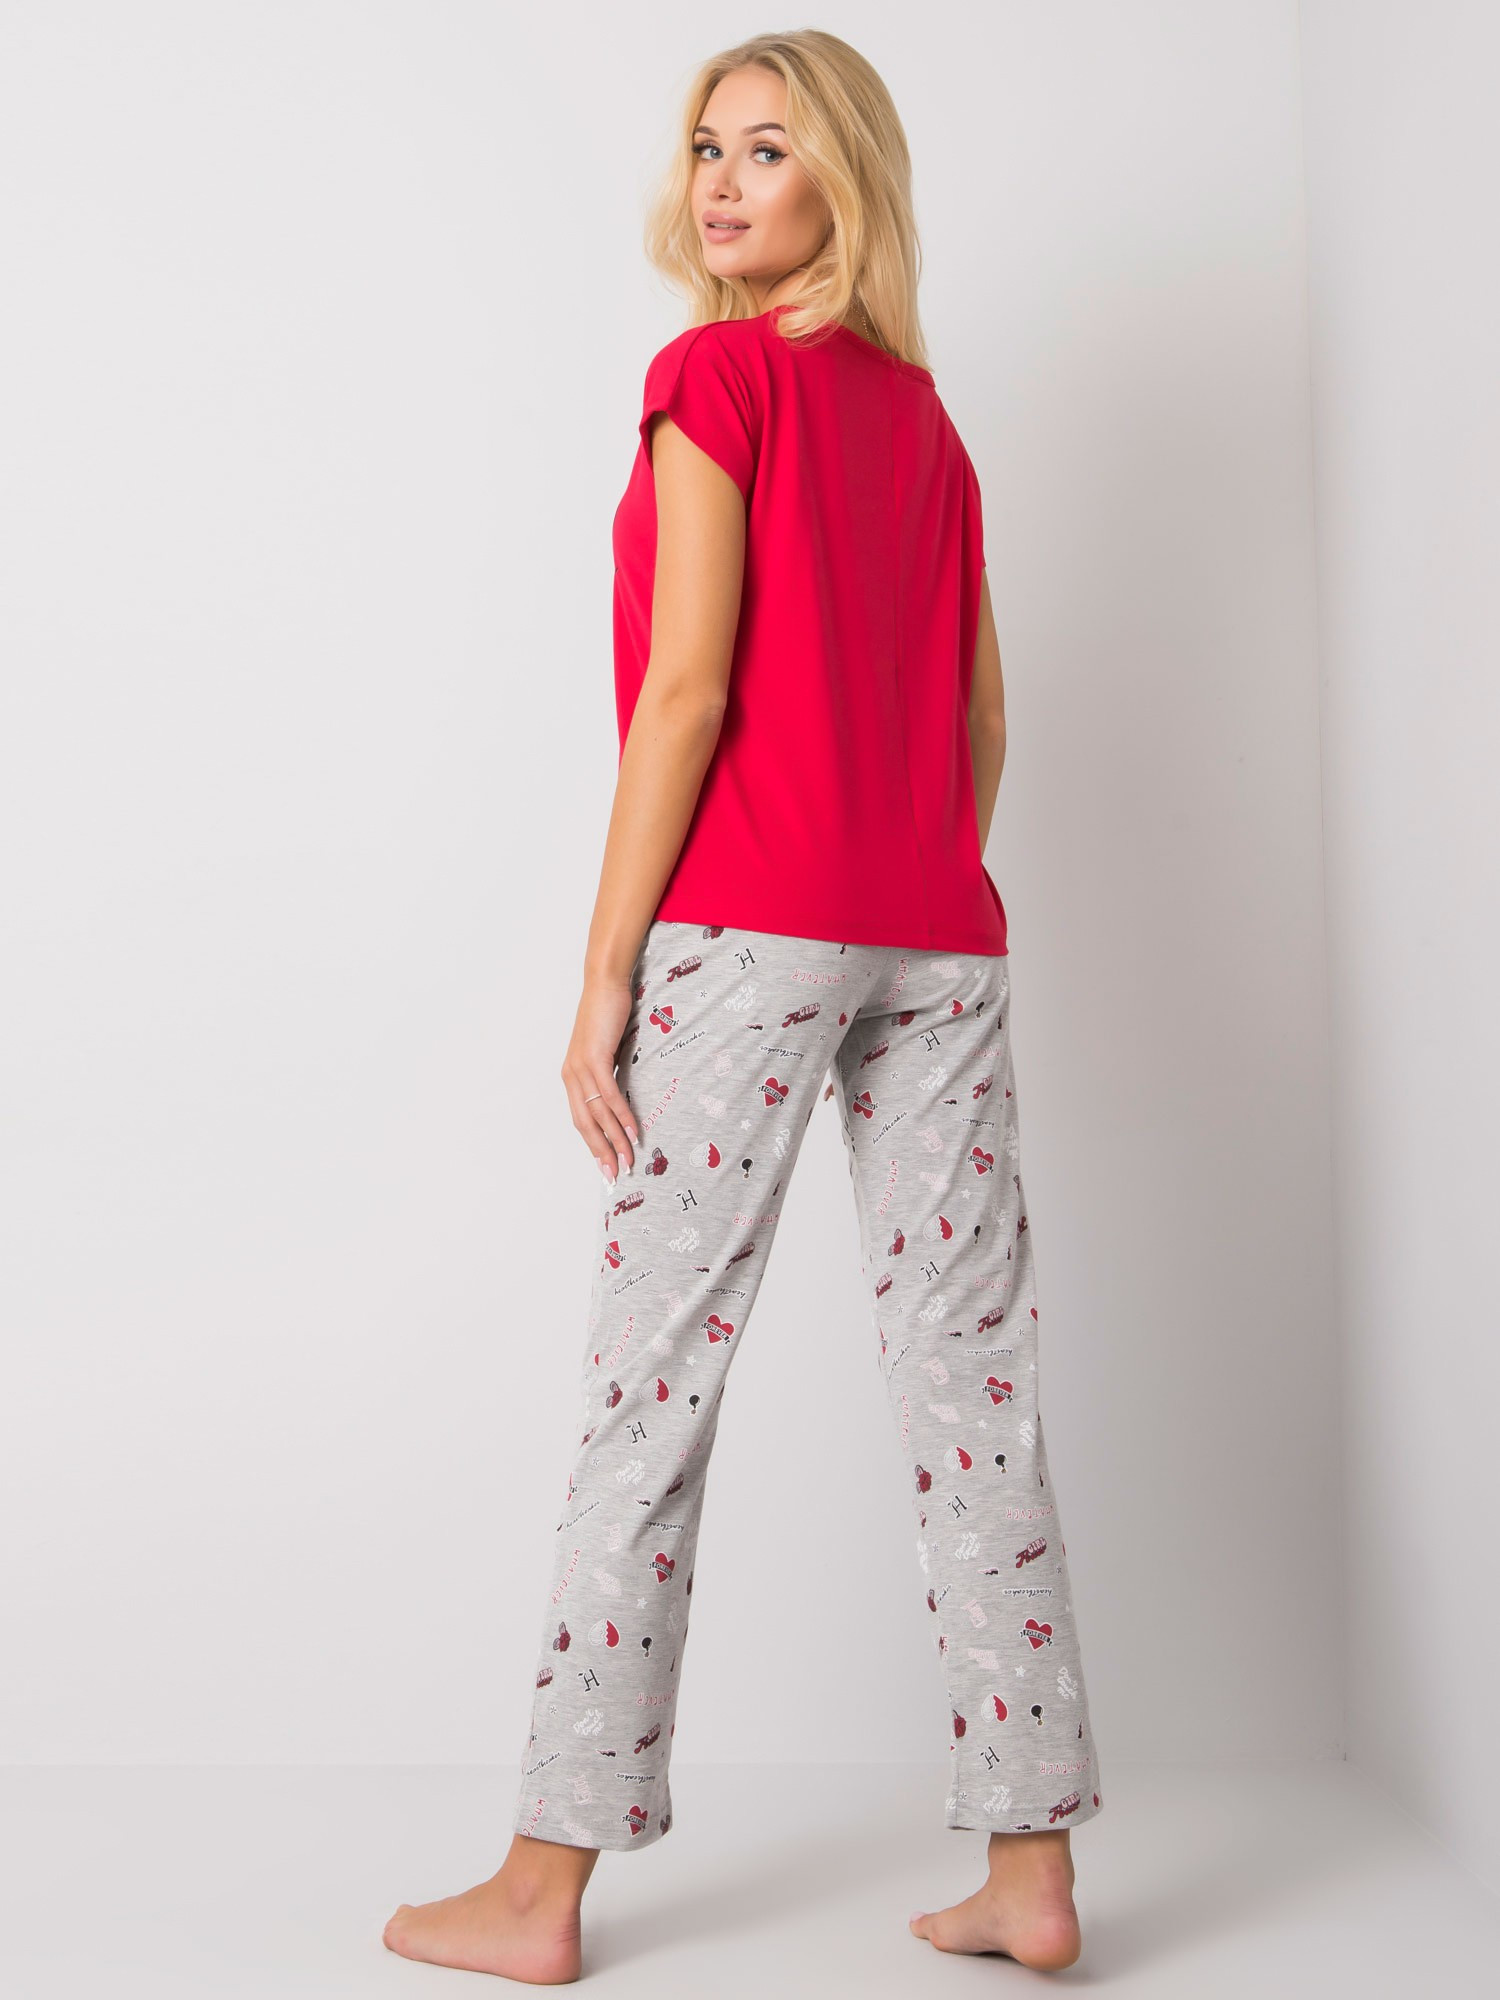 Dámske vzorované červené pyžamo XL